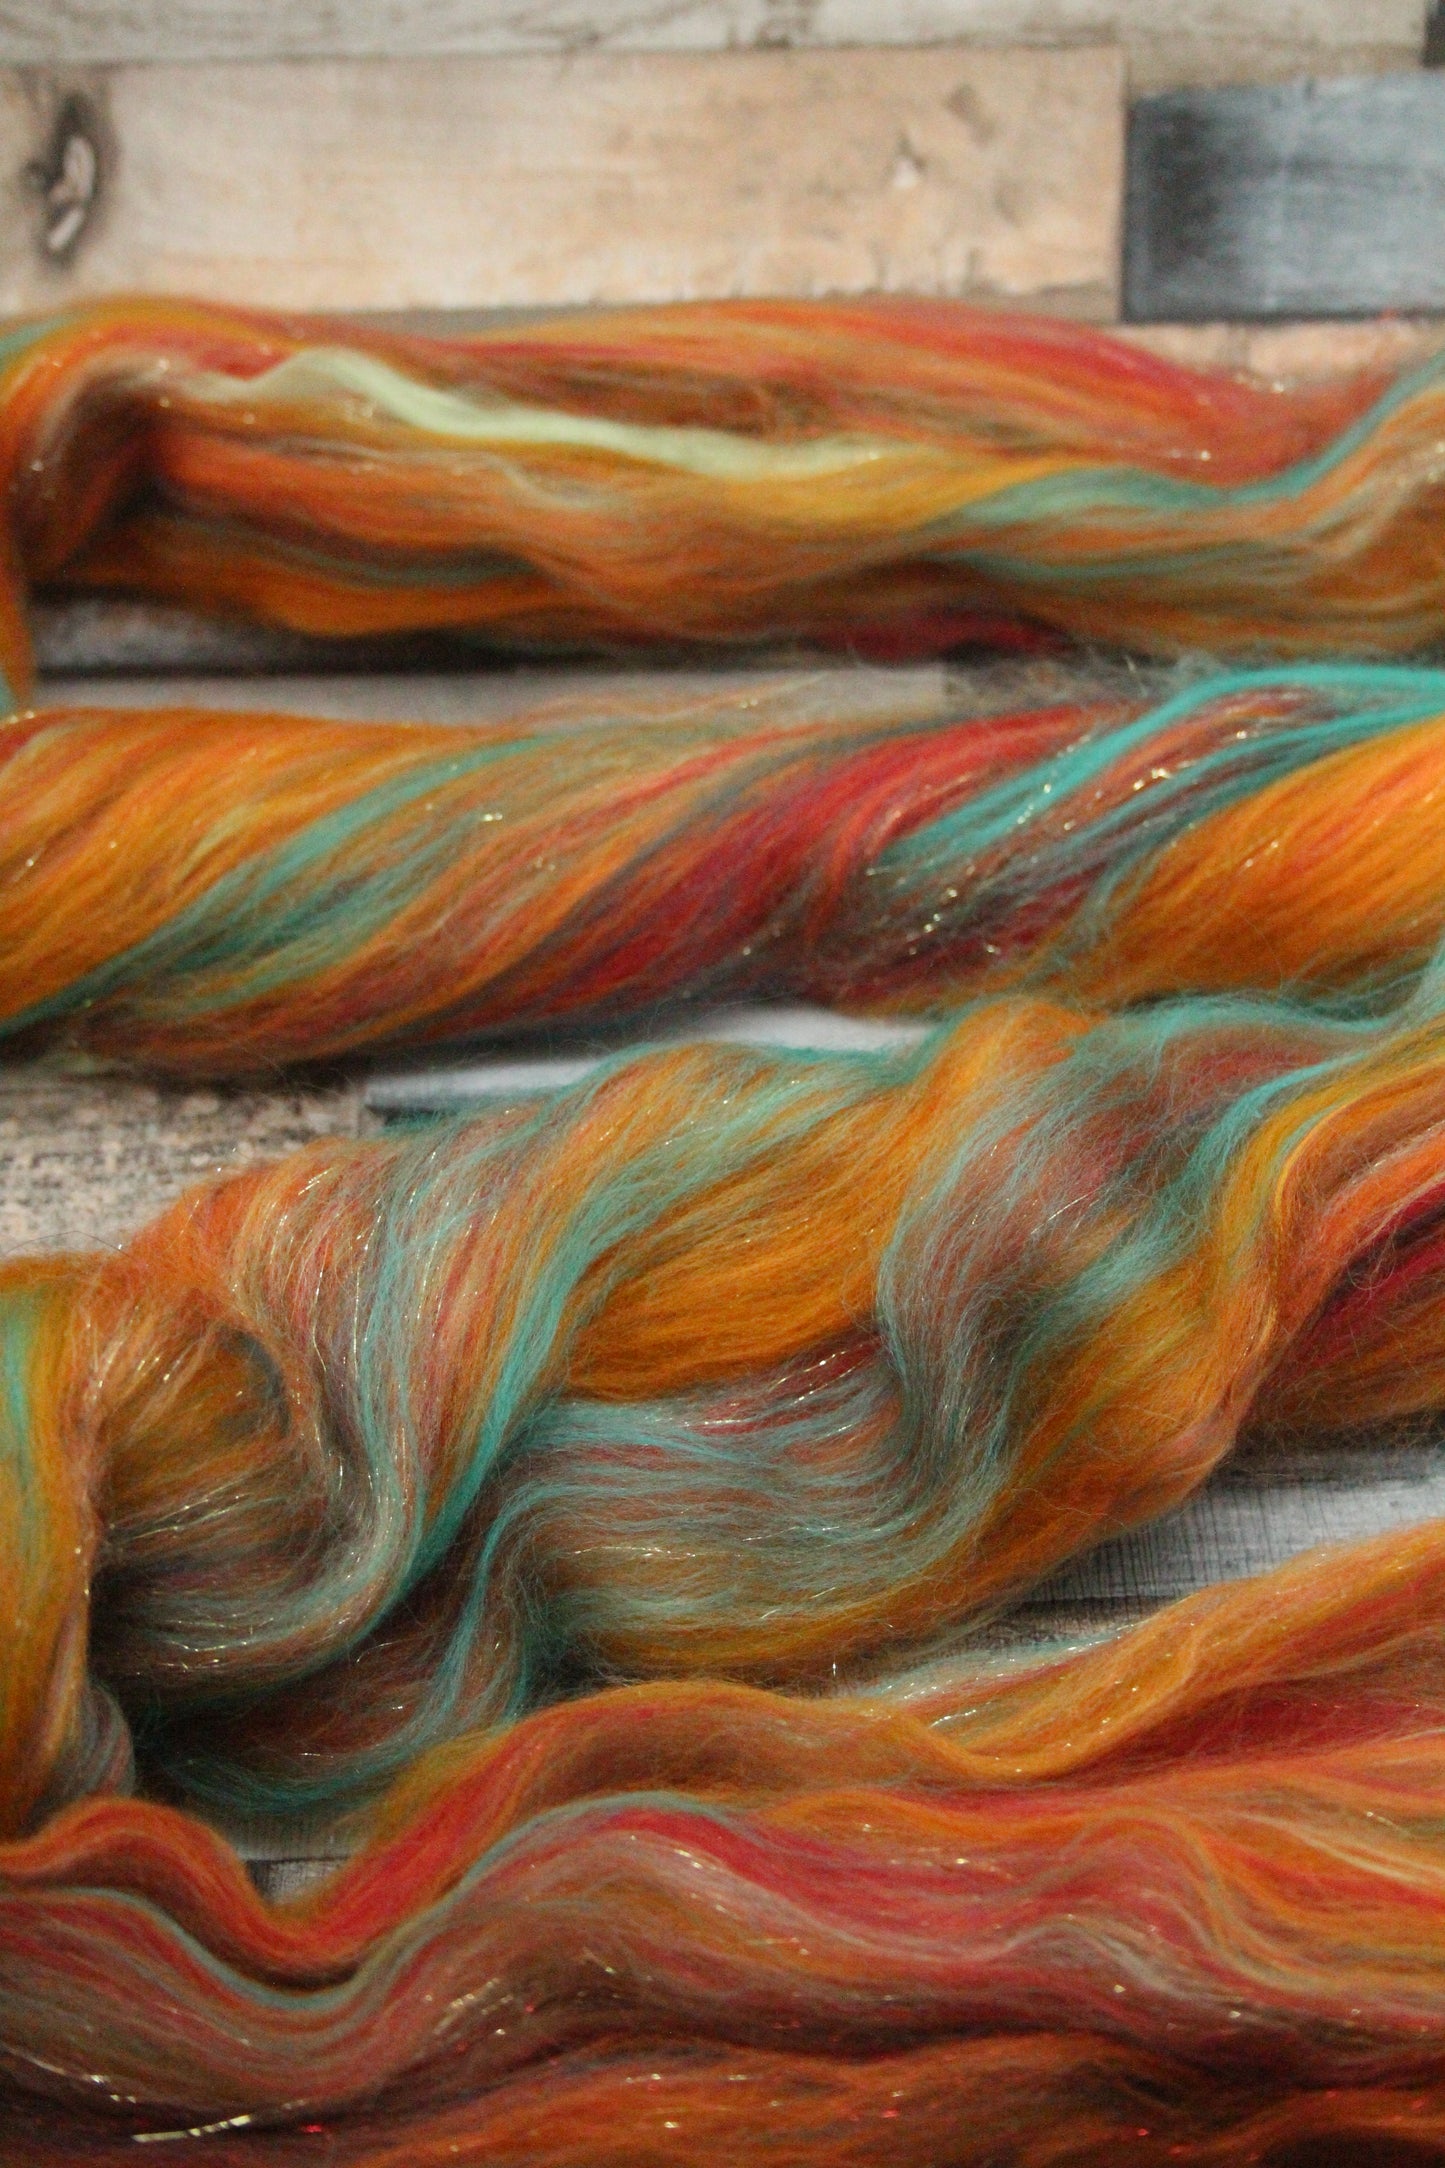 Merino Wool Blend - Orange Brown Green Red - 46 grams / 1.6 oz  - Fibre for felting, weaving or spinning